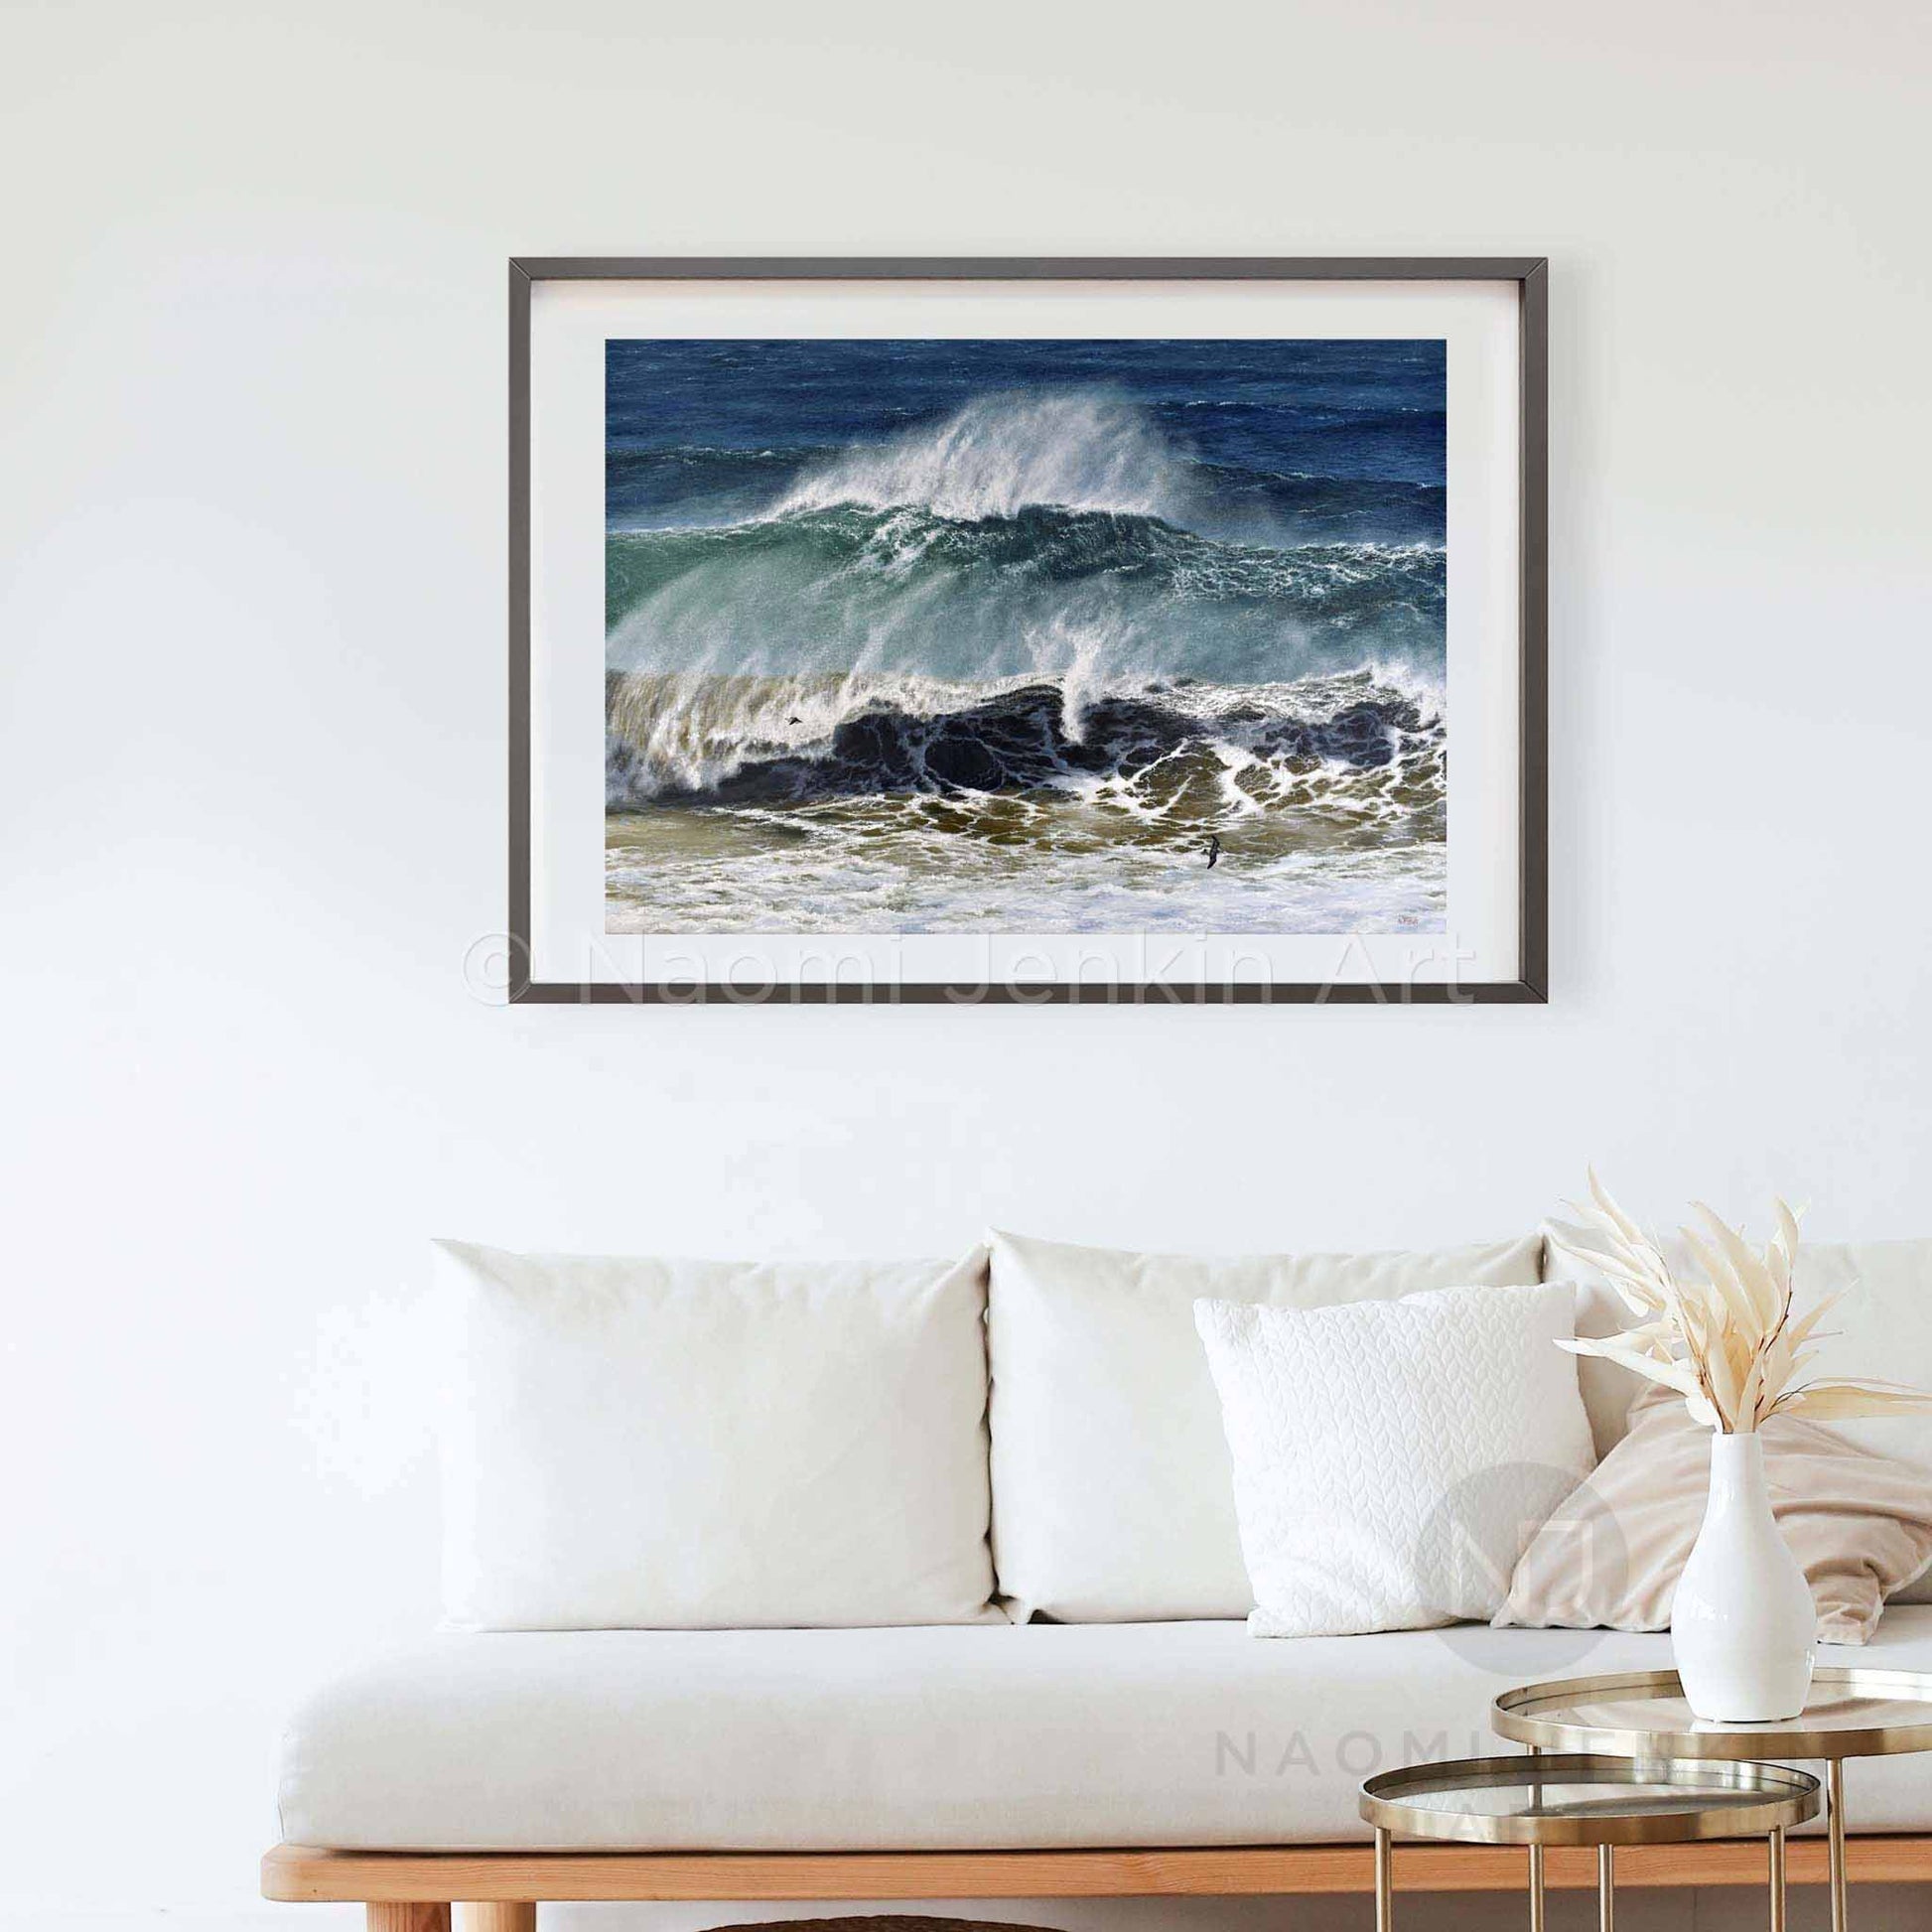 Ocean print 'Raging Seas' by seascape artist Naomi Jenkin Art in a black frame